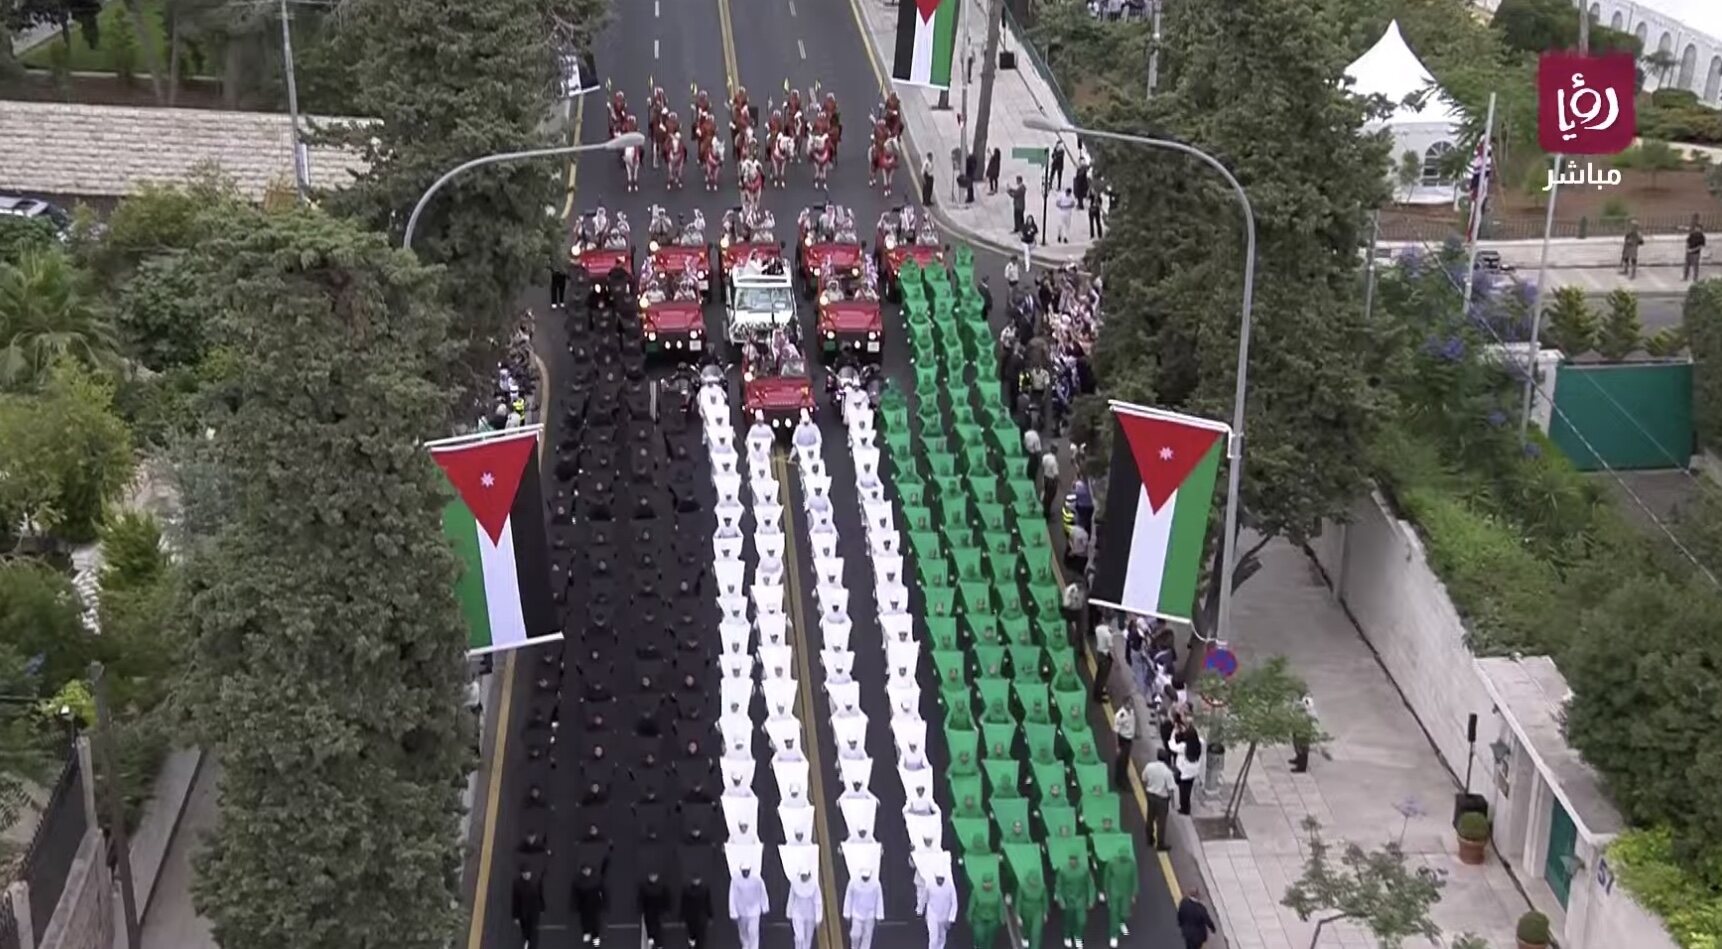 La procesión nupcial forma la bandera de Jordania